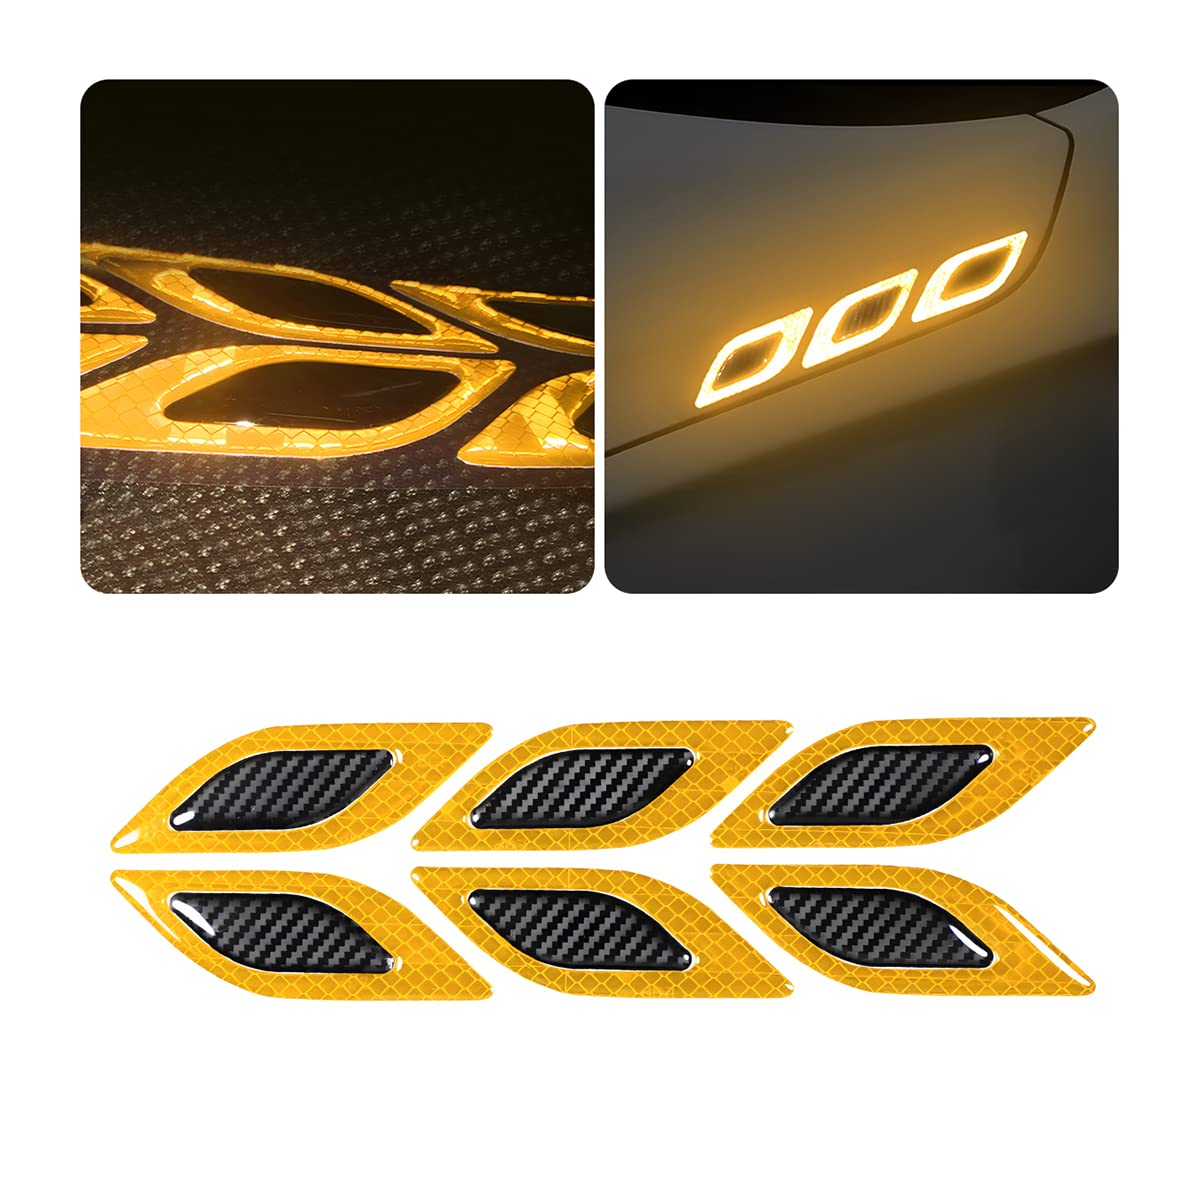 CGEMDY 6 Stück Universal Reflektierende Auto-Warnaufkleber, Auto Warnung Sicherheit Reflektierende, Stoßstangenaufkleber Für Autos 3D Reflektierende Warnaufkleber (Gelb) von CGEAMDY